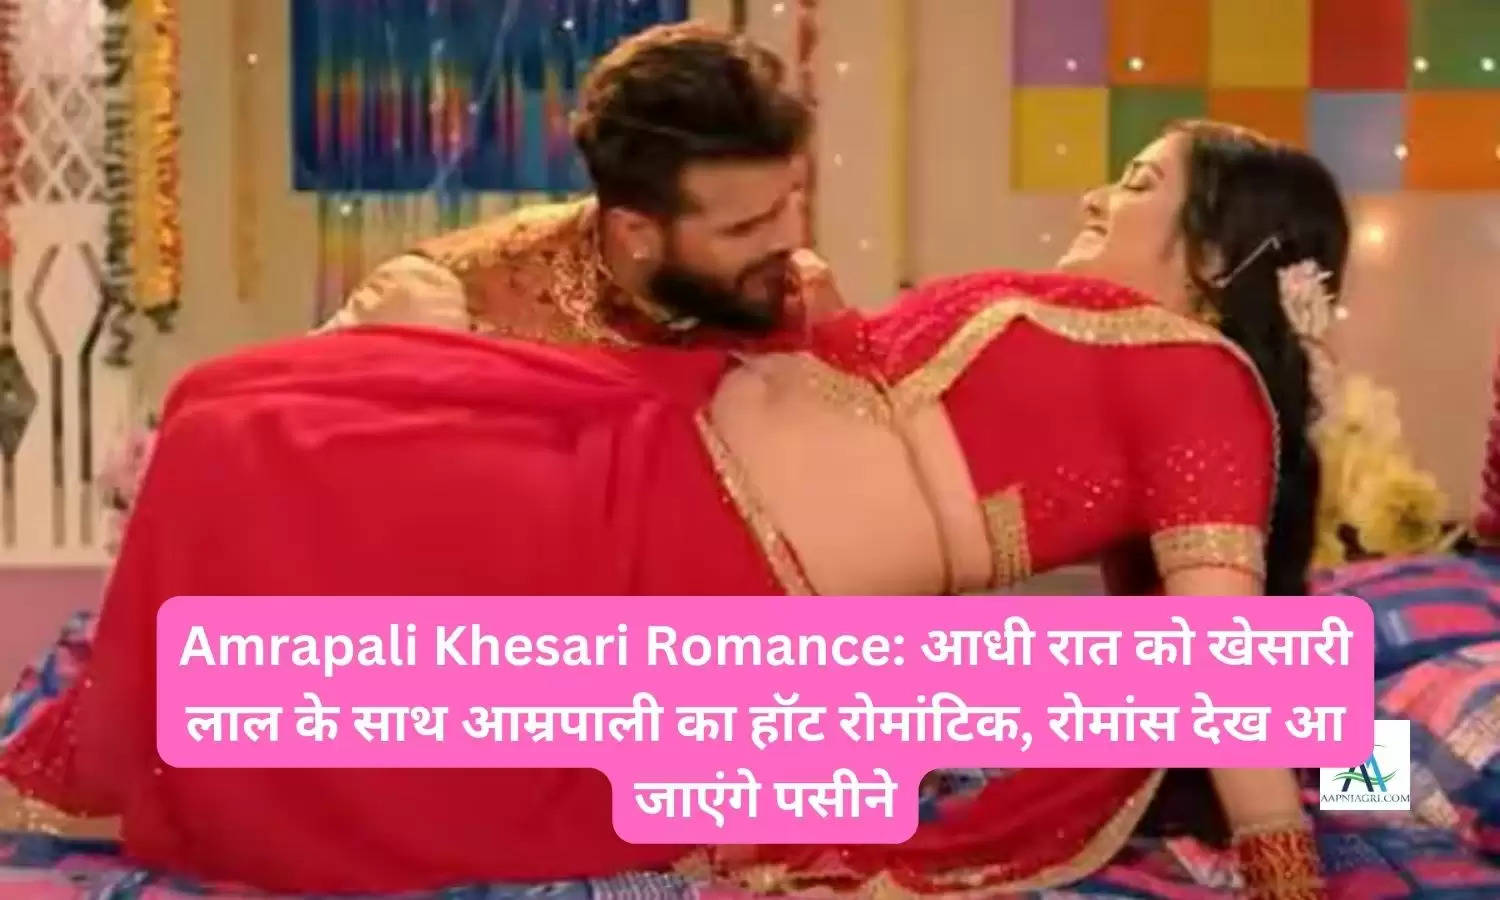 Amrapali Khesari Romance: आधी रात को खेसारी लाल के साथ आम्रपाली का हॉट रोमांटिक, रोमांस देख आ जाएंगे पसीने